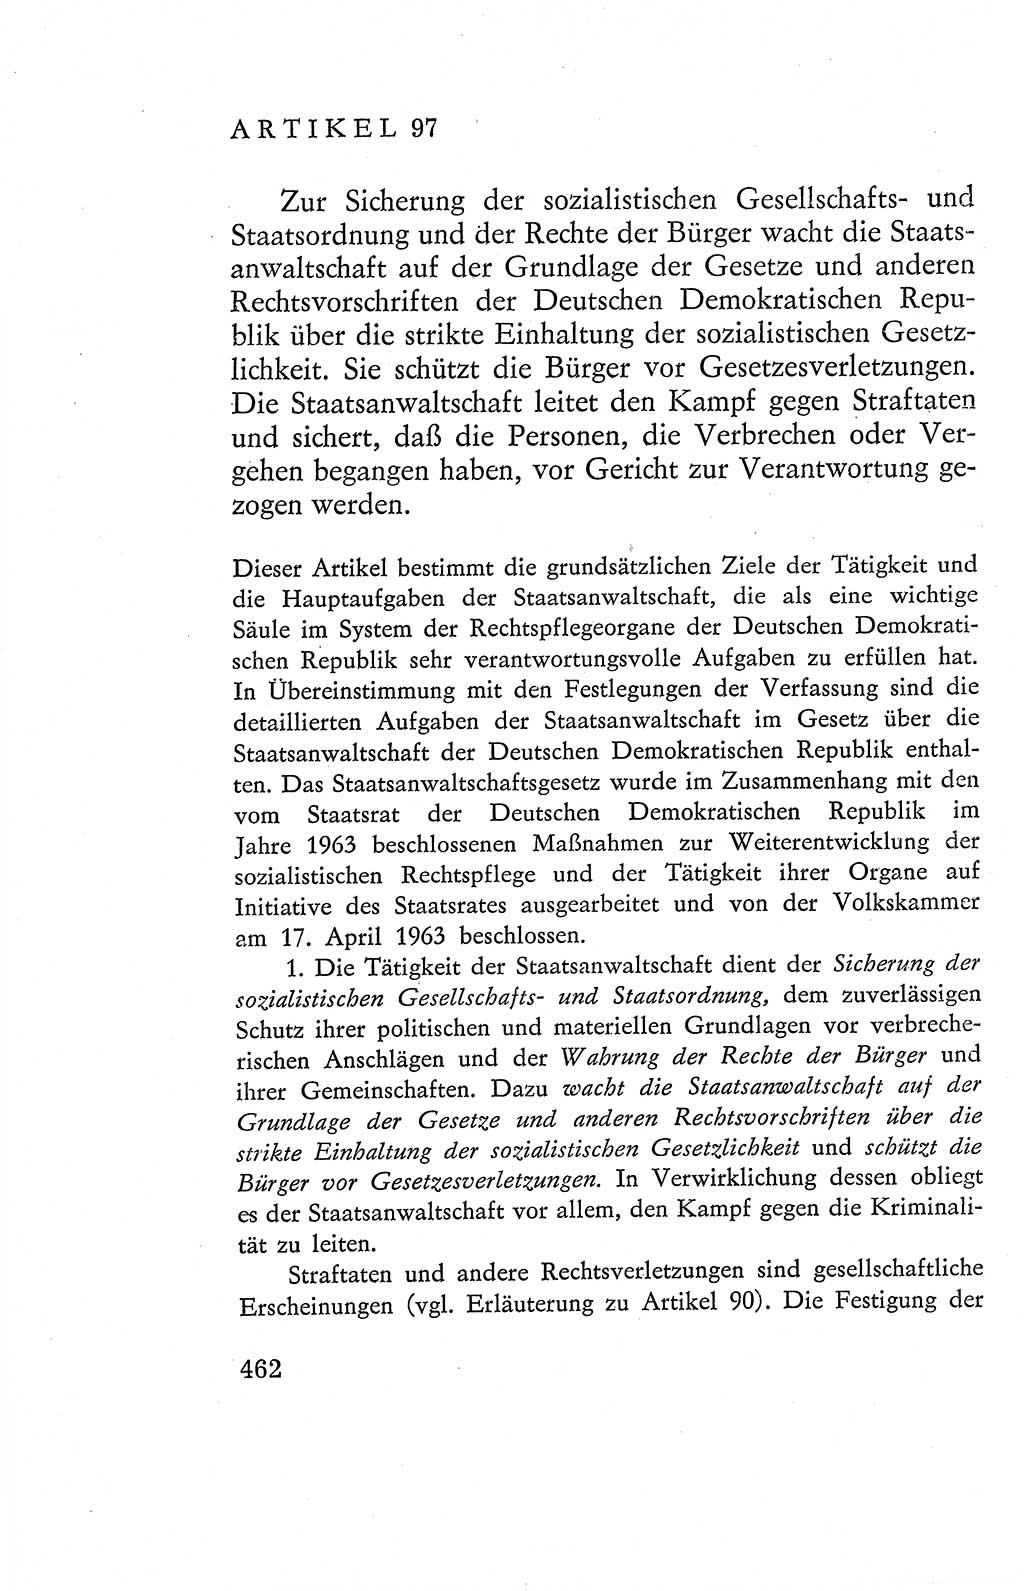 Verfassung der Deutschen Demokratischen Republik (DDR), Dokumente, Kommentar 1969, Band 2, Seite 462 (Verf. DDR Dok. Komm. 1969, Bd. 2, S. 462)